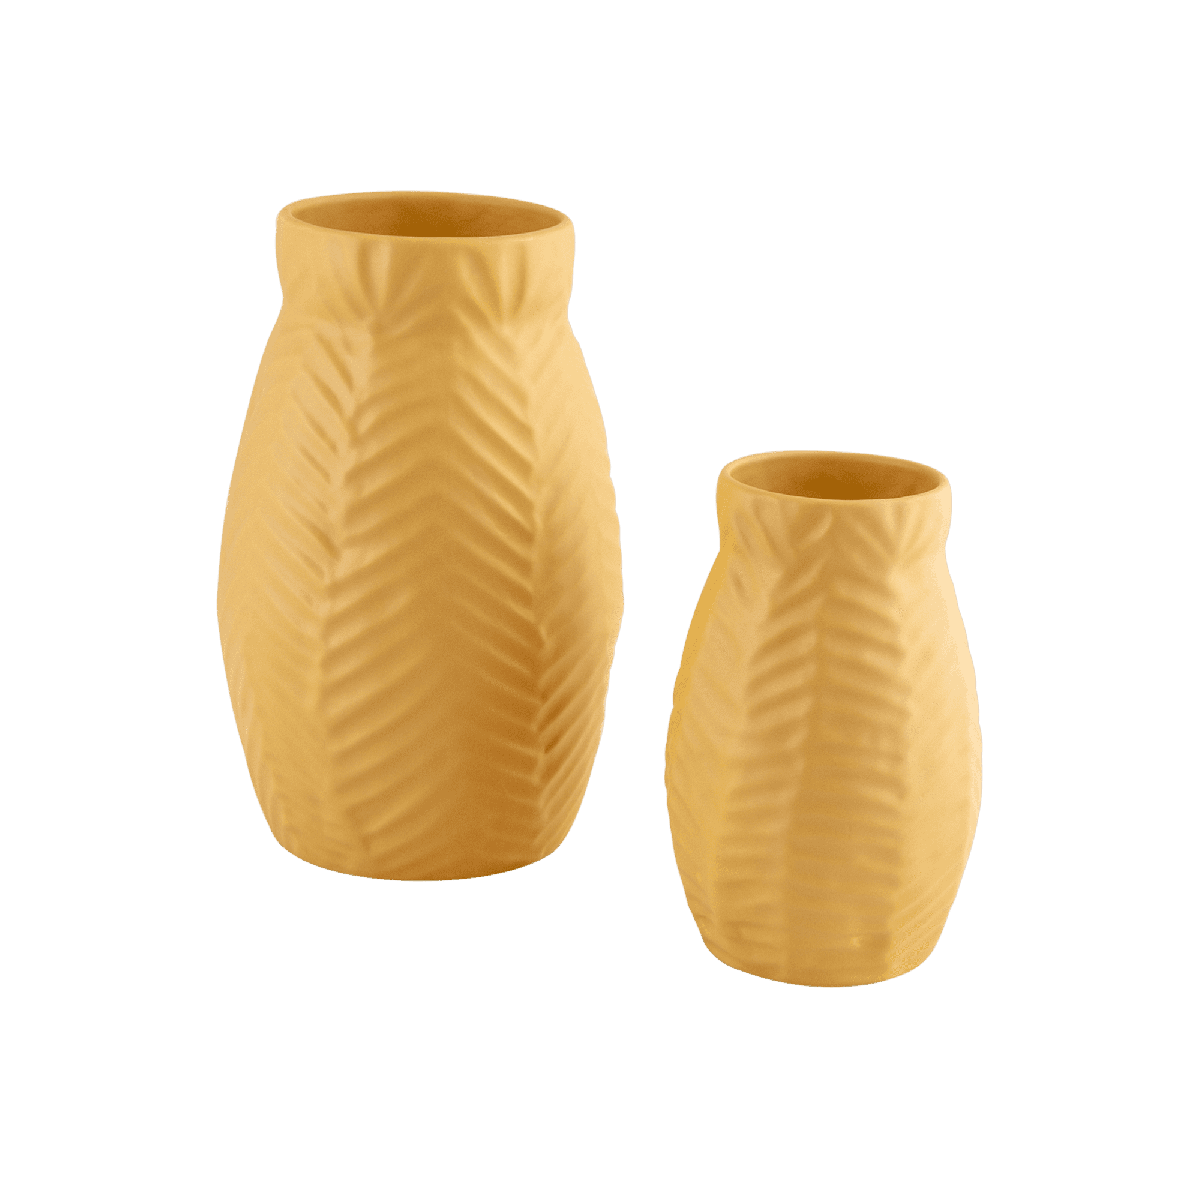 Herrinbone Ceramic Vase